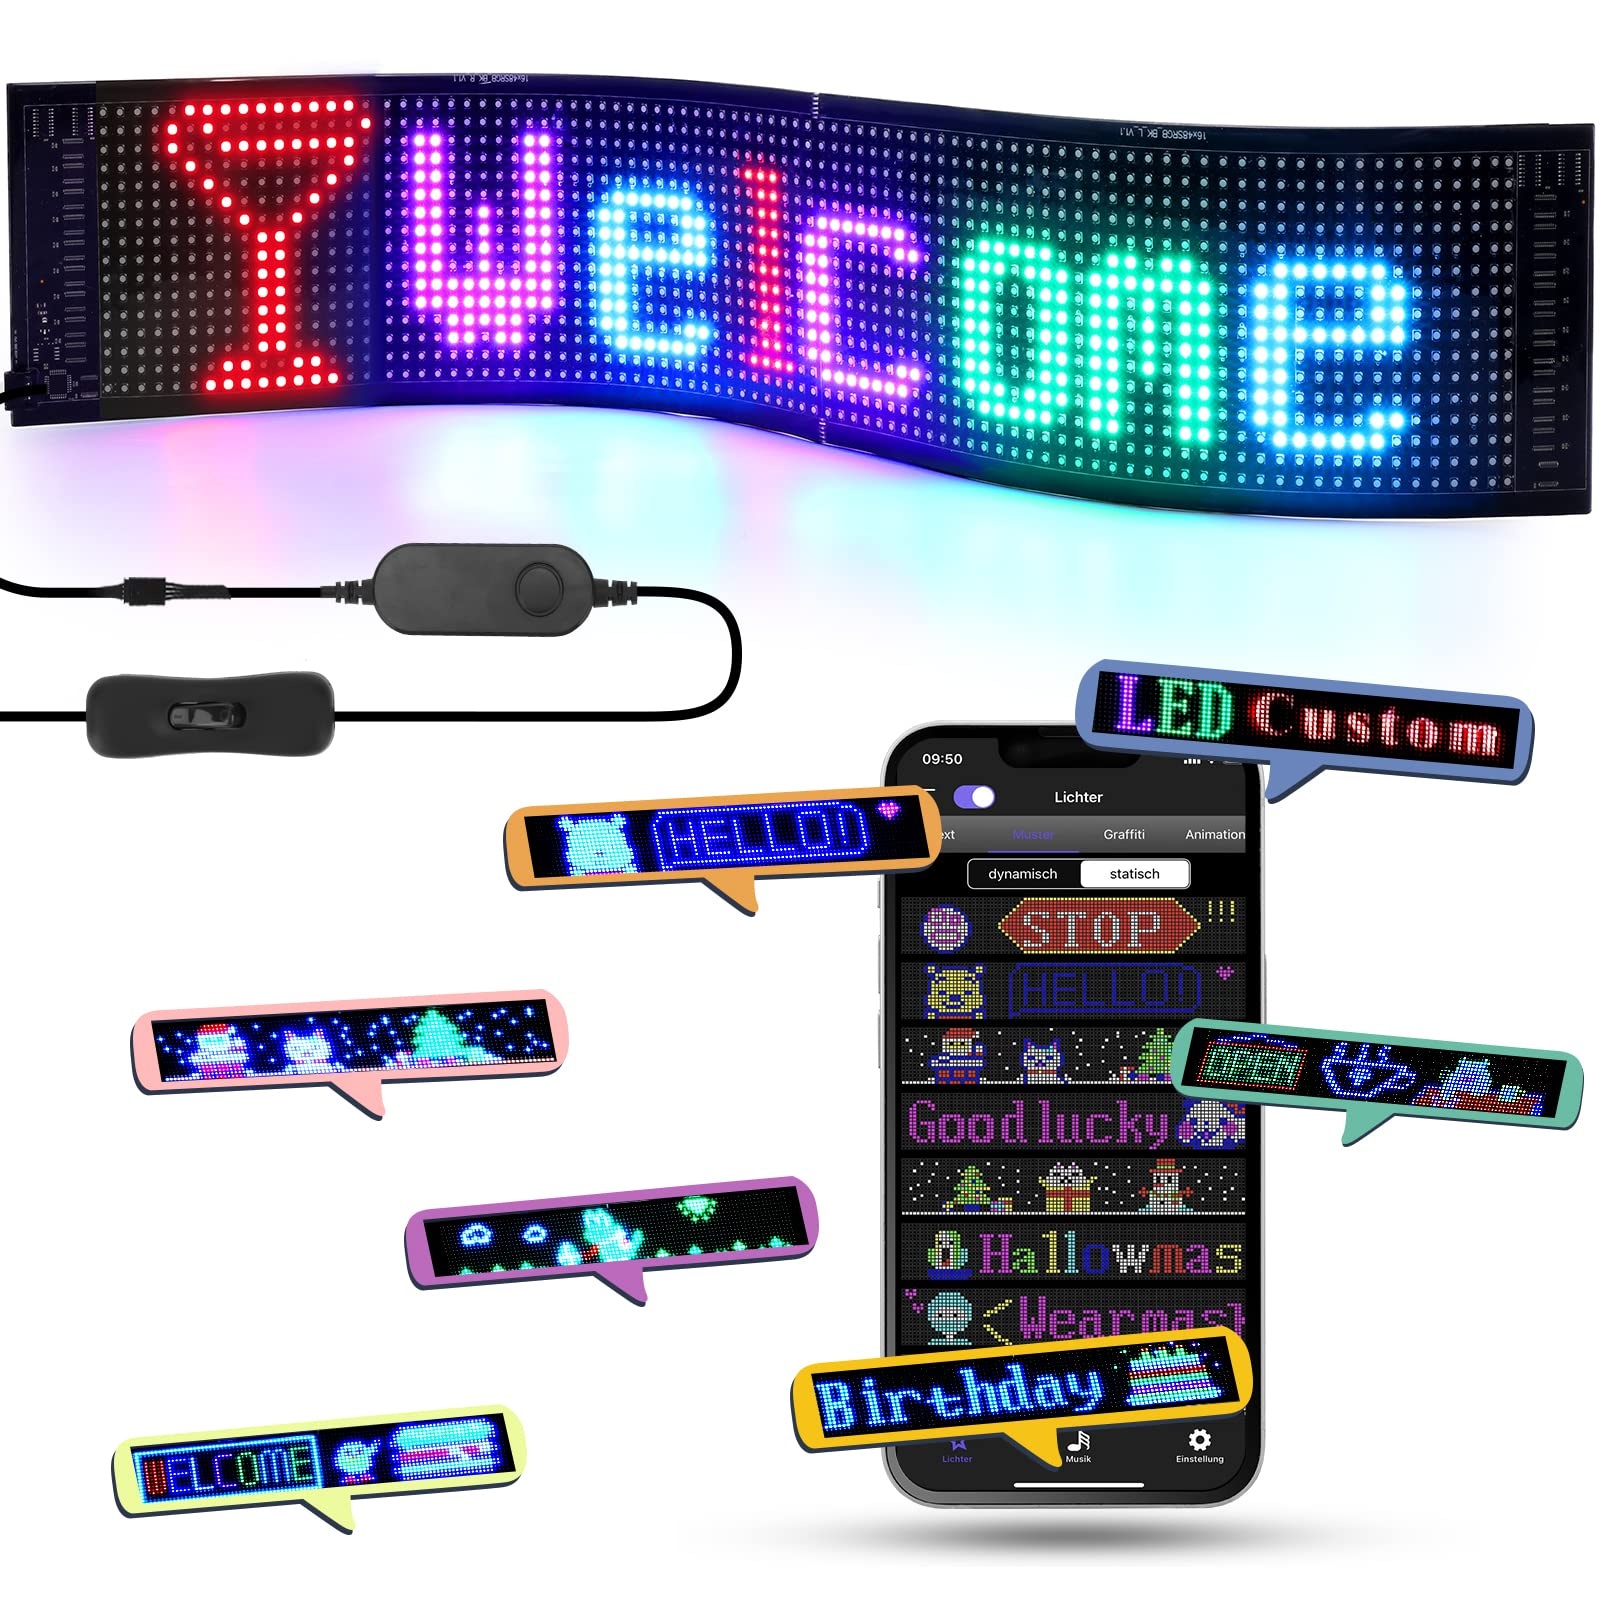 LED Laufschrift, 68x12cm Werbetafel für außen LED Anzeigetafel Programmierbar, LED Schild Personalisiert unterstützt Digital, Text, Graffiti, Animation Display, Smart APP Steuerung, USB Betriebene